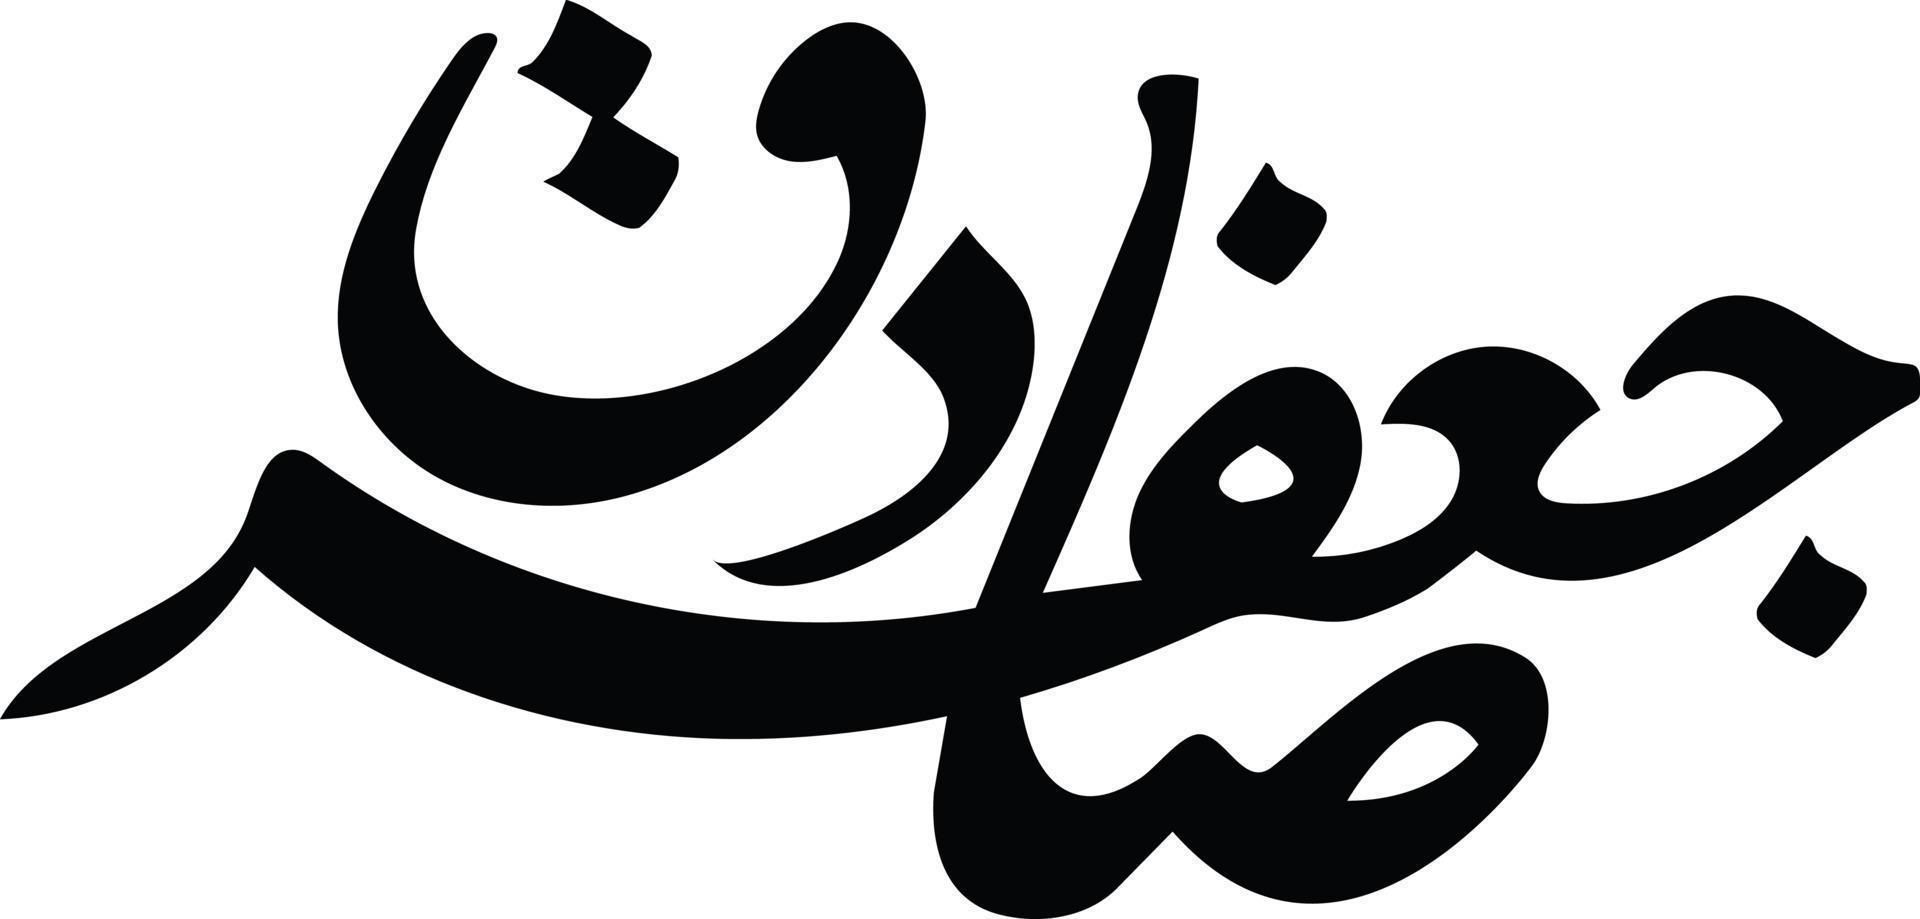 jafer sadiq calligraphie arabe islamique vecteur gratuit